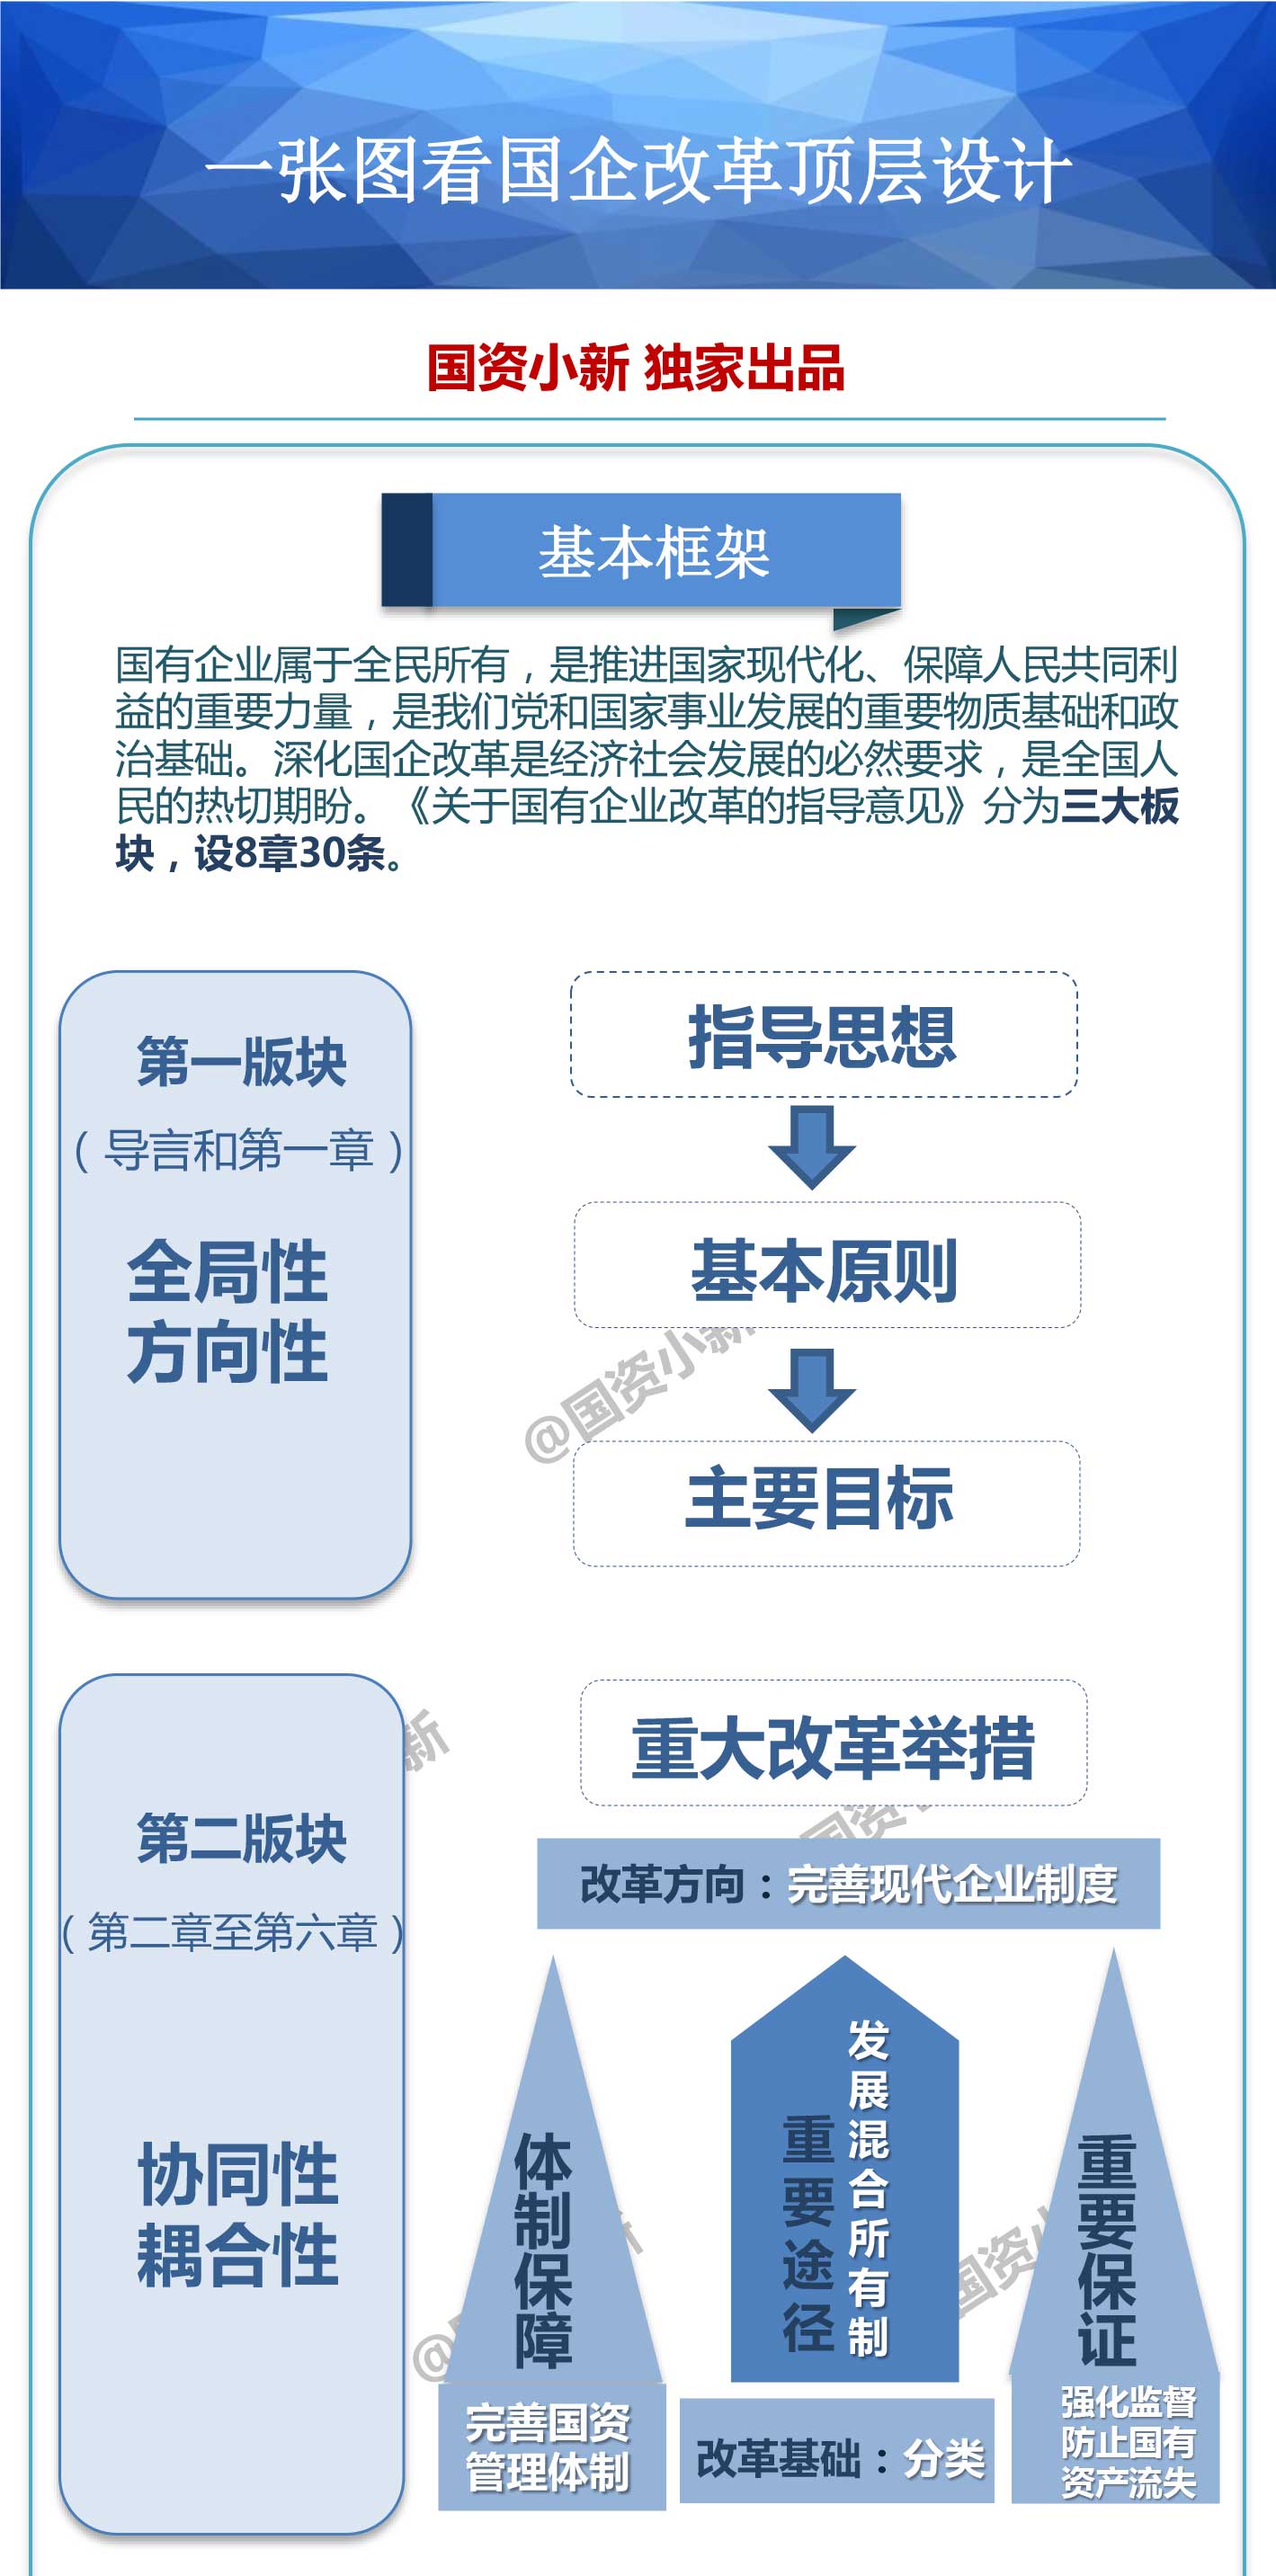 中共中央國務院關於深化國有企業改革的指導意見(綱領性檔案)